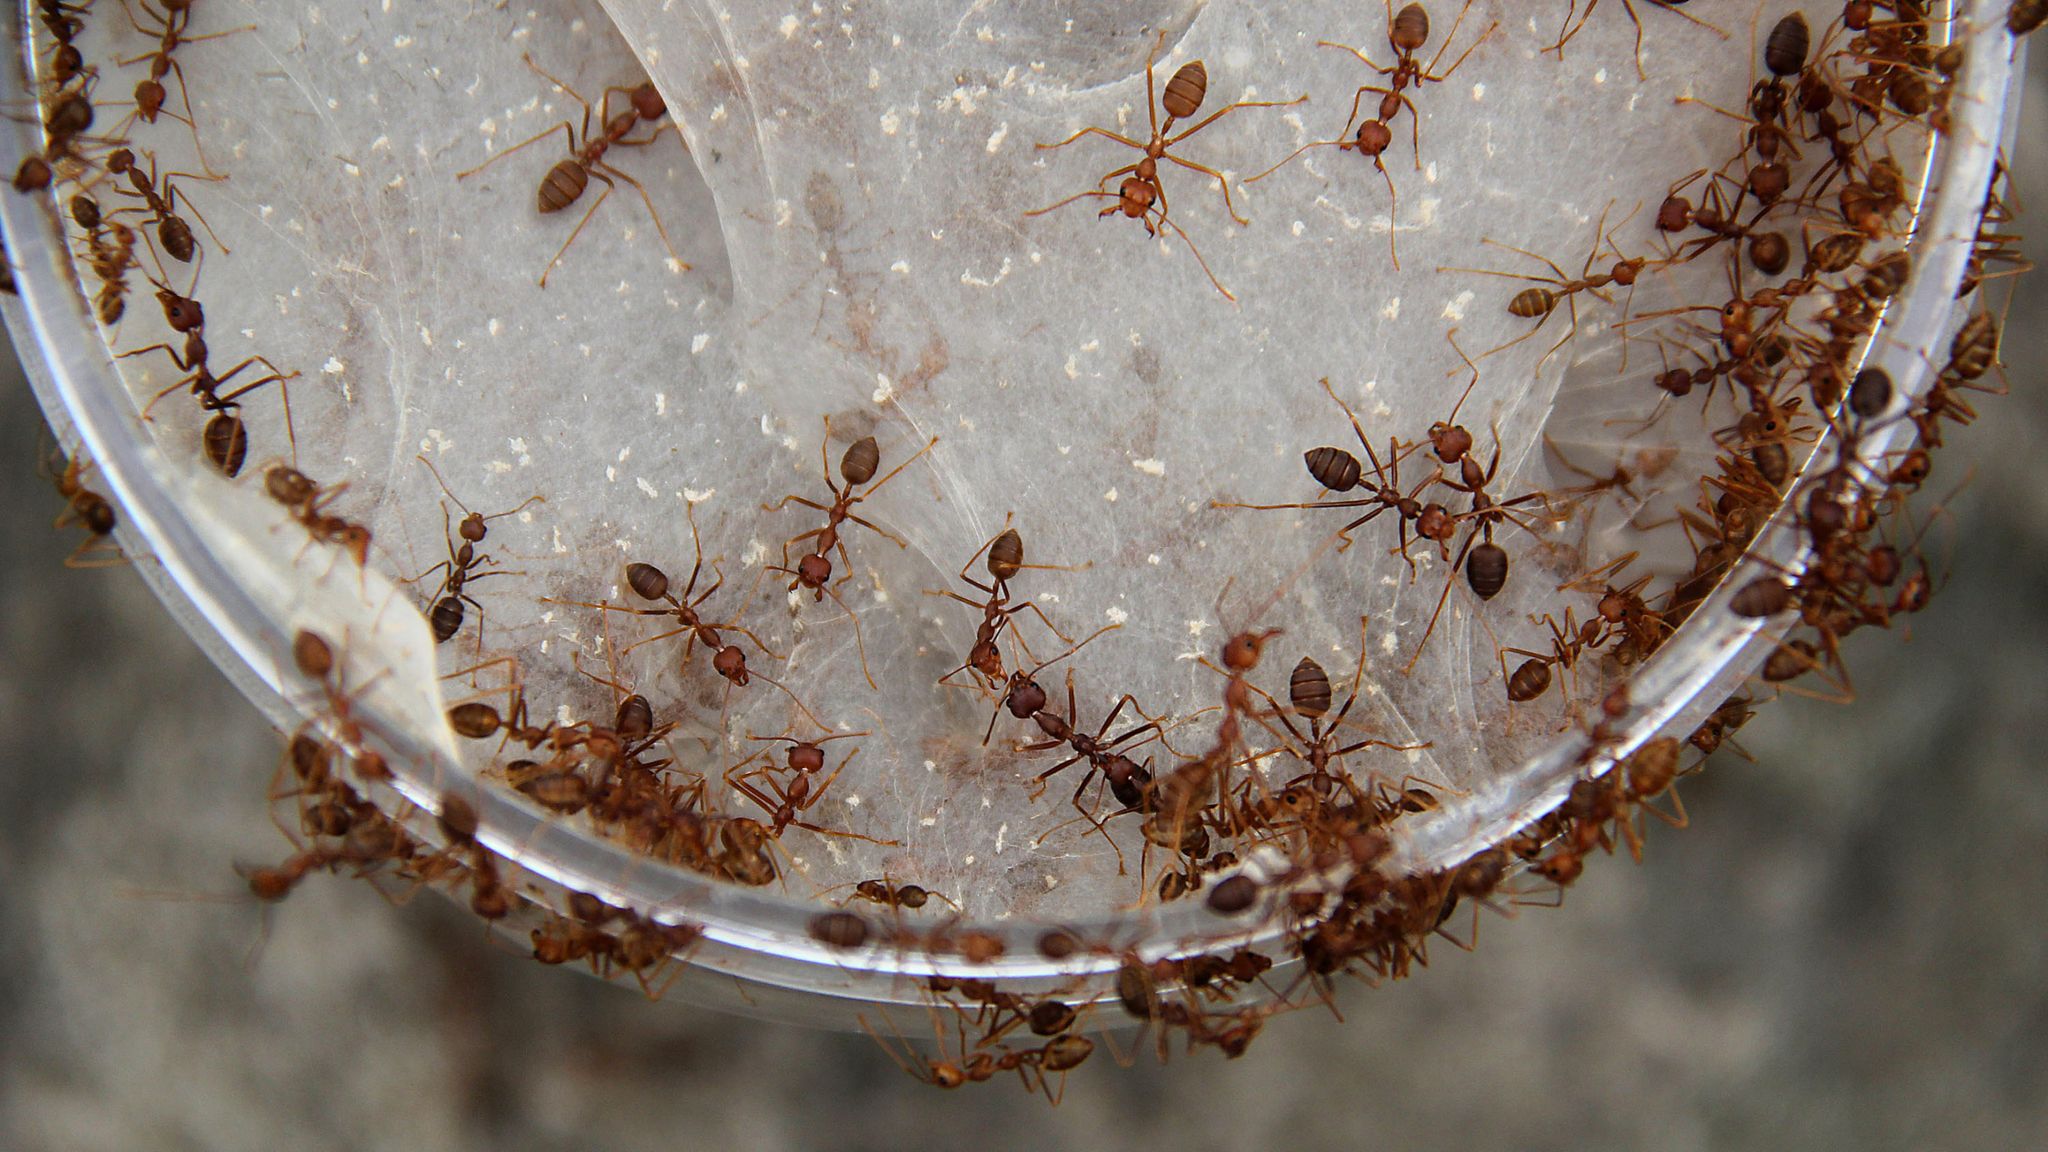 Чего боятся муравьи